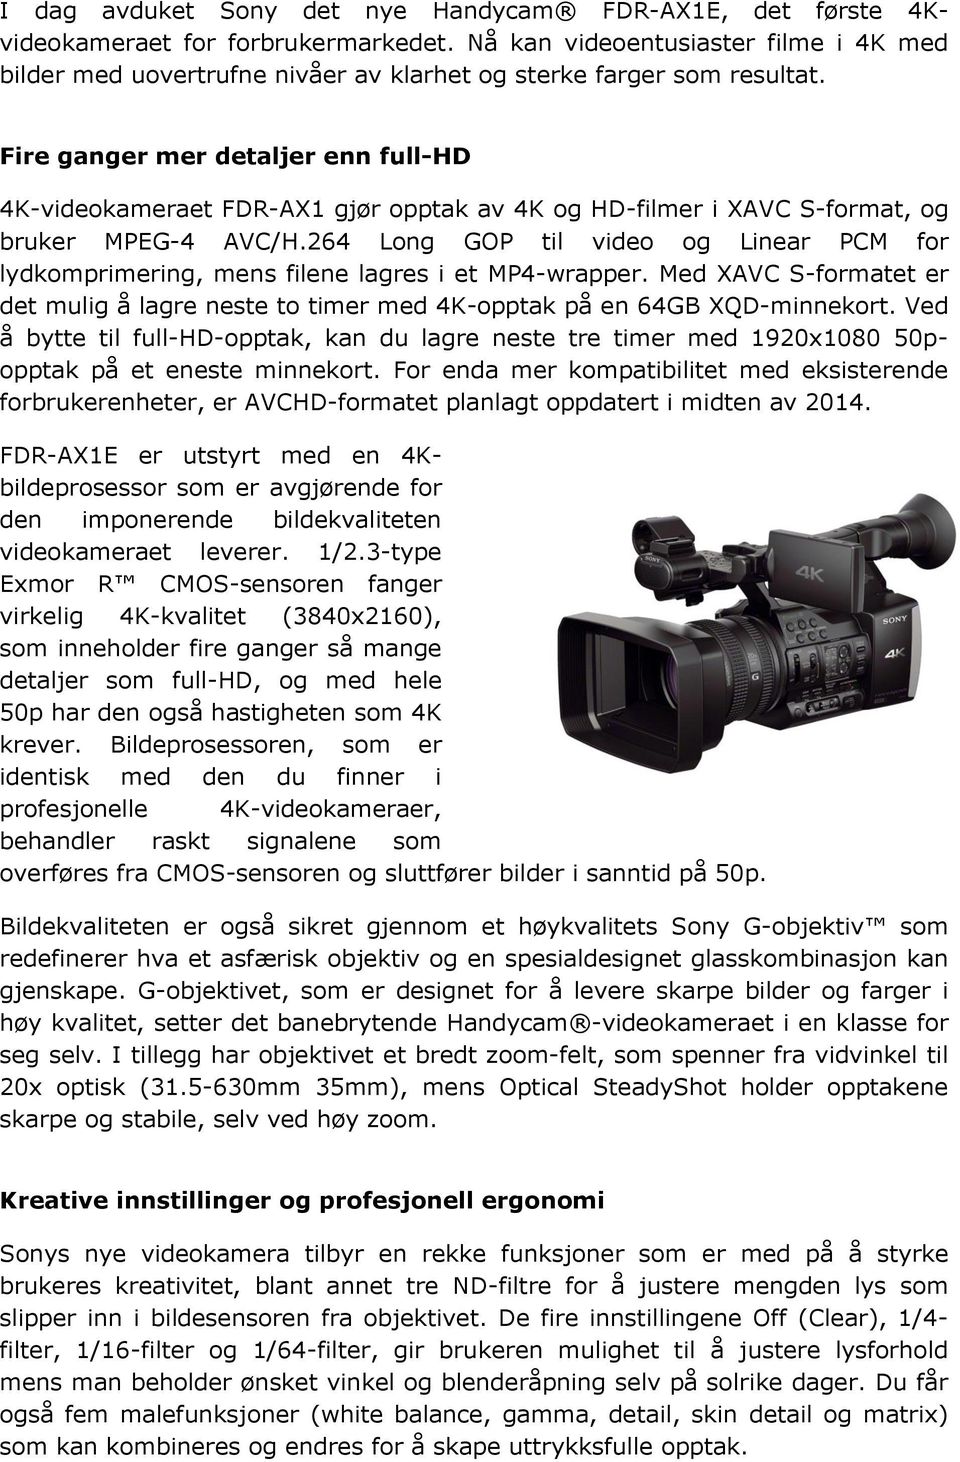 Fire ganger mer detaljer enn full-hd 4K-videokameraet FDR-AX1 gjør opptak av 4K og HD-filmer i XAVC S-format, og bruker MPEG-4 AVC/H.